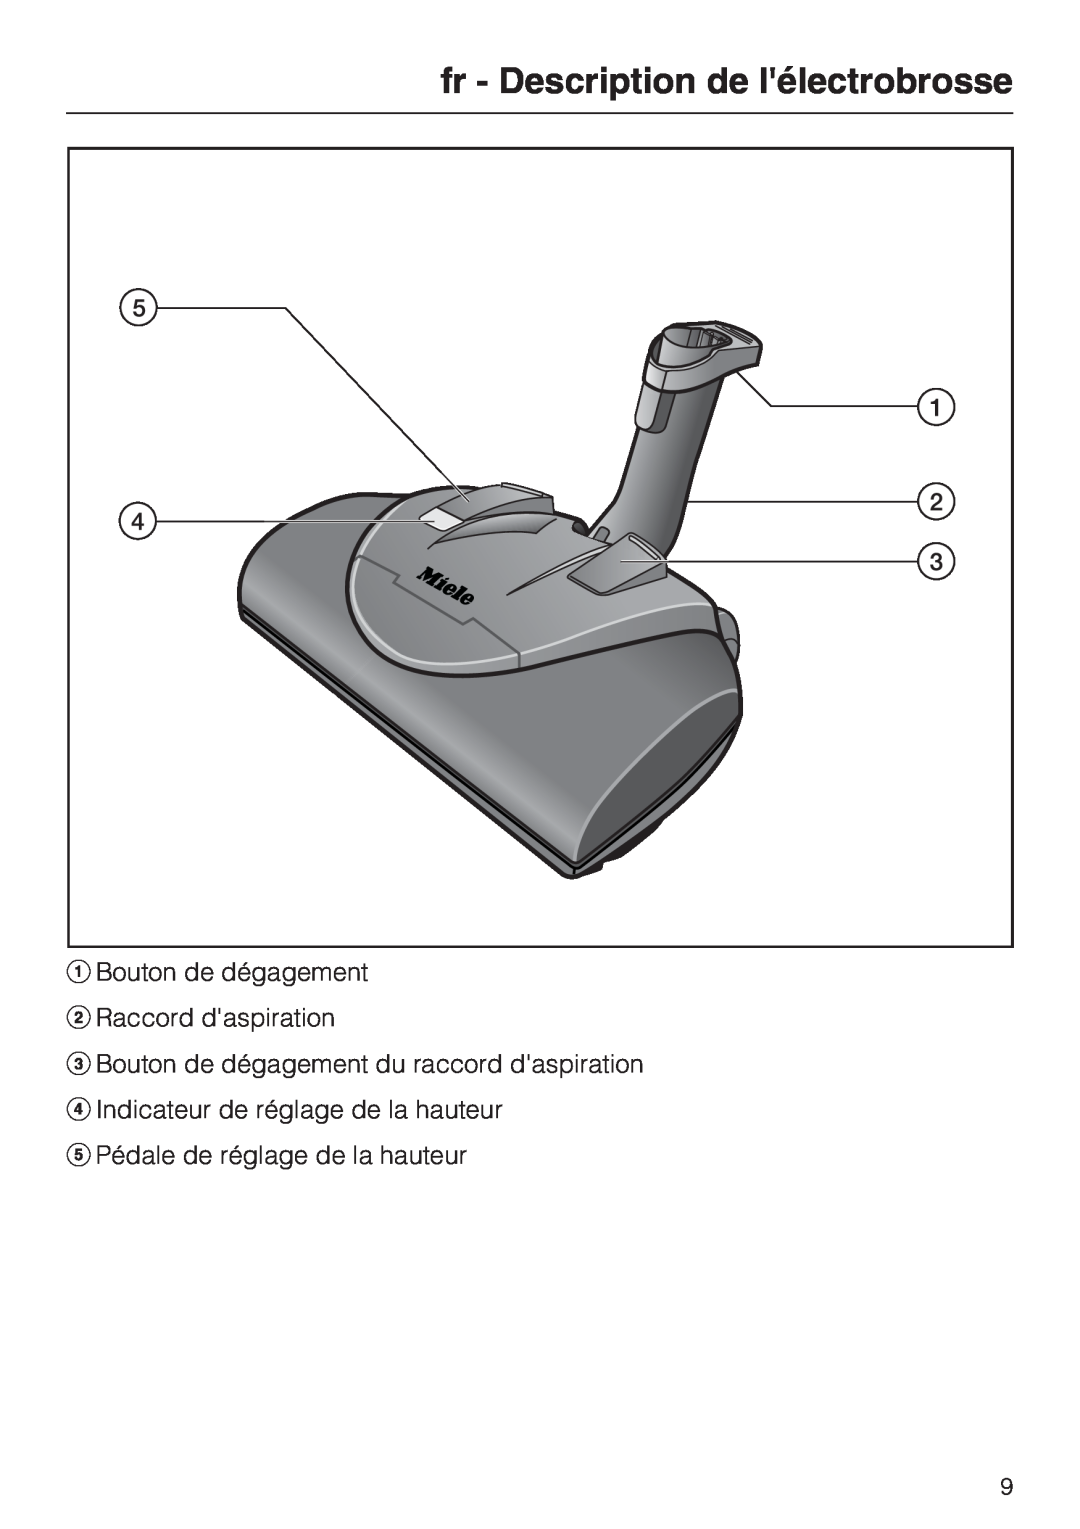 Miele SEB 228 manual fr - Description de lélectrobrosse, Bouton de dégagement Raccord daspiration 